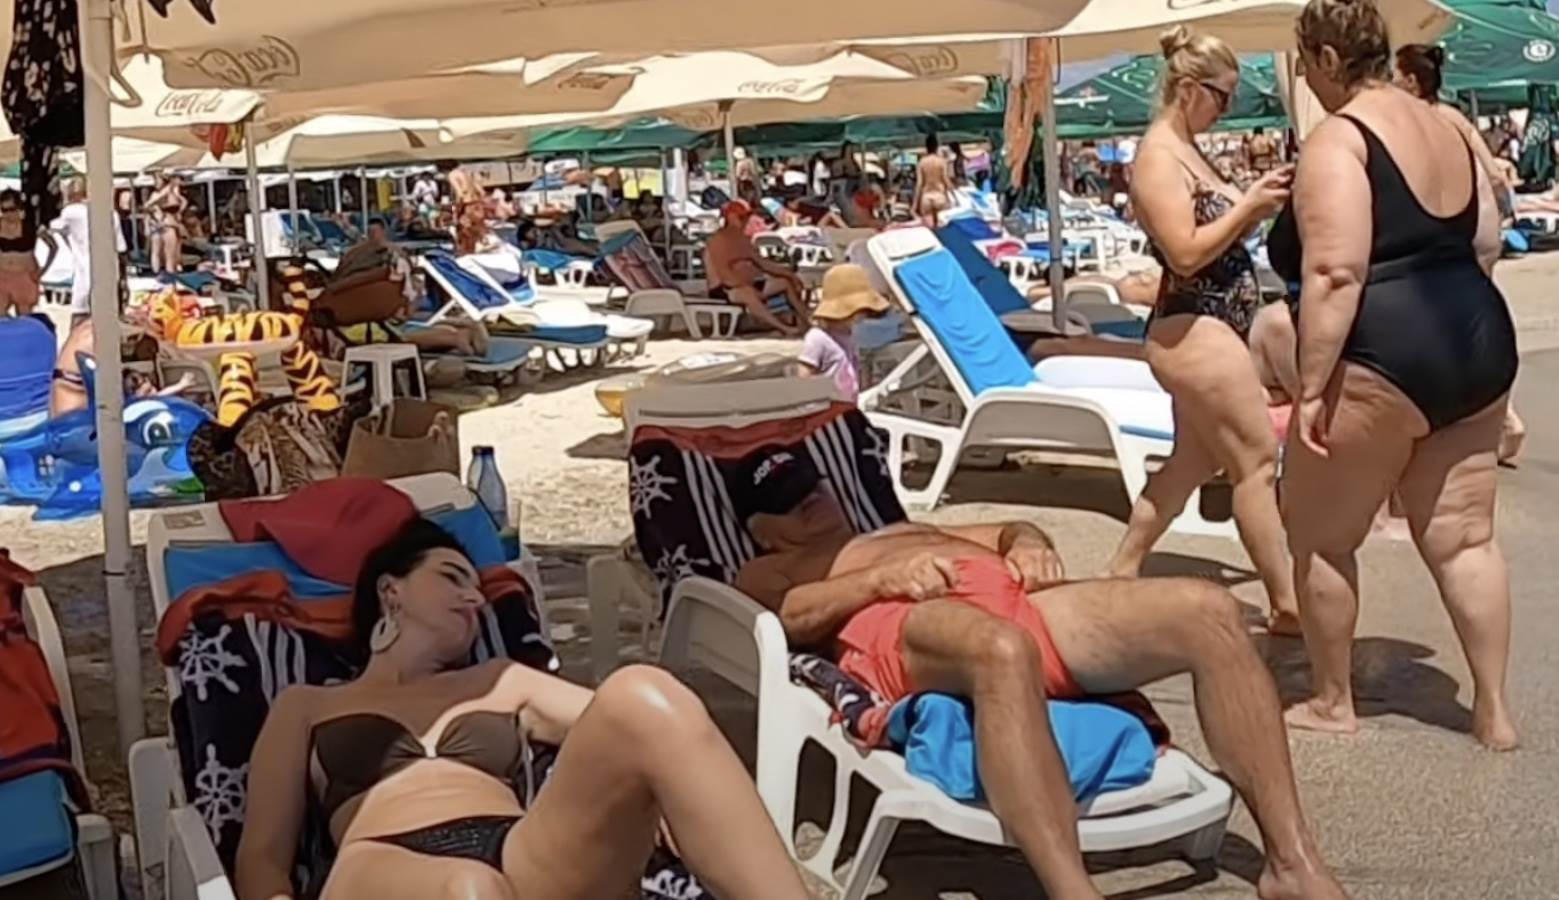  dvije osobe kaznjene u hrvatskoj zbog kupaceg 